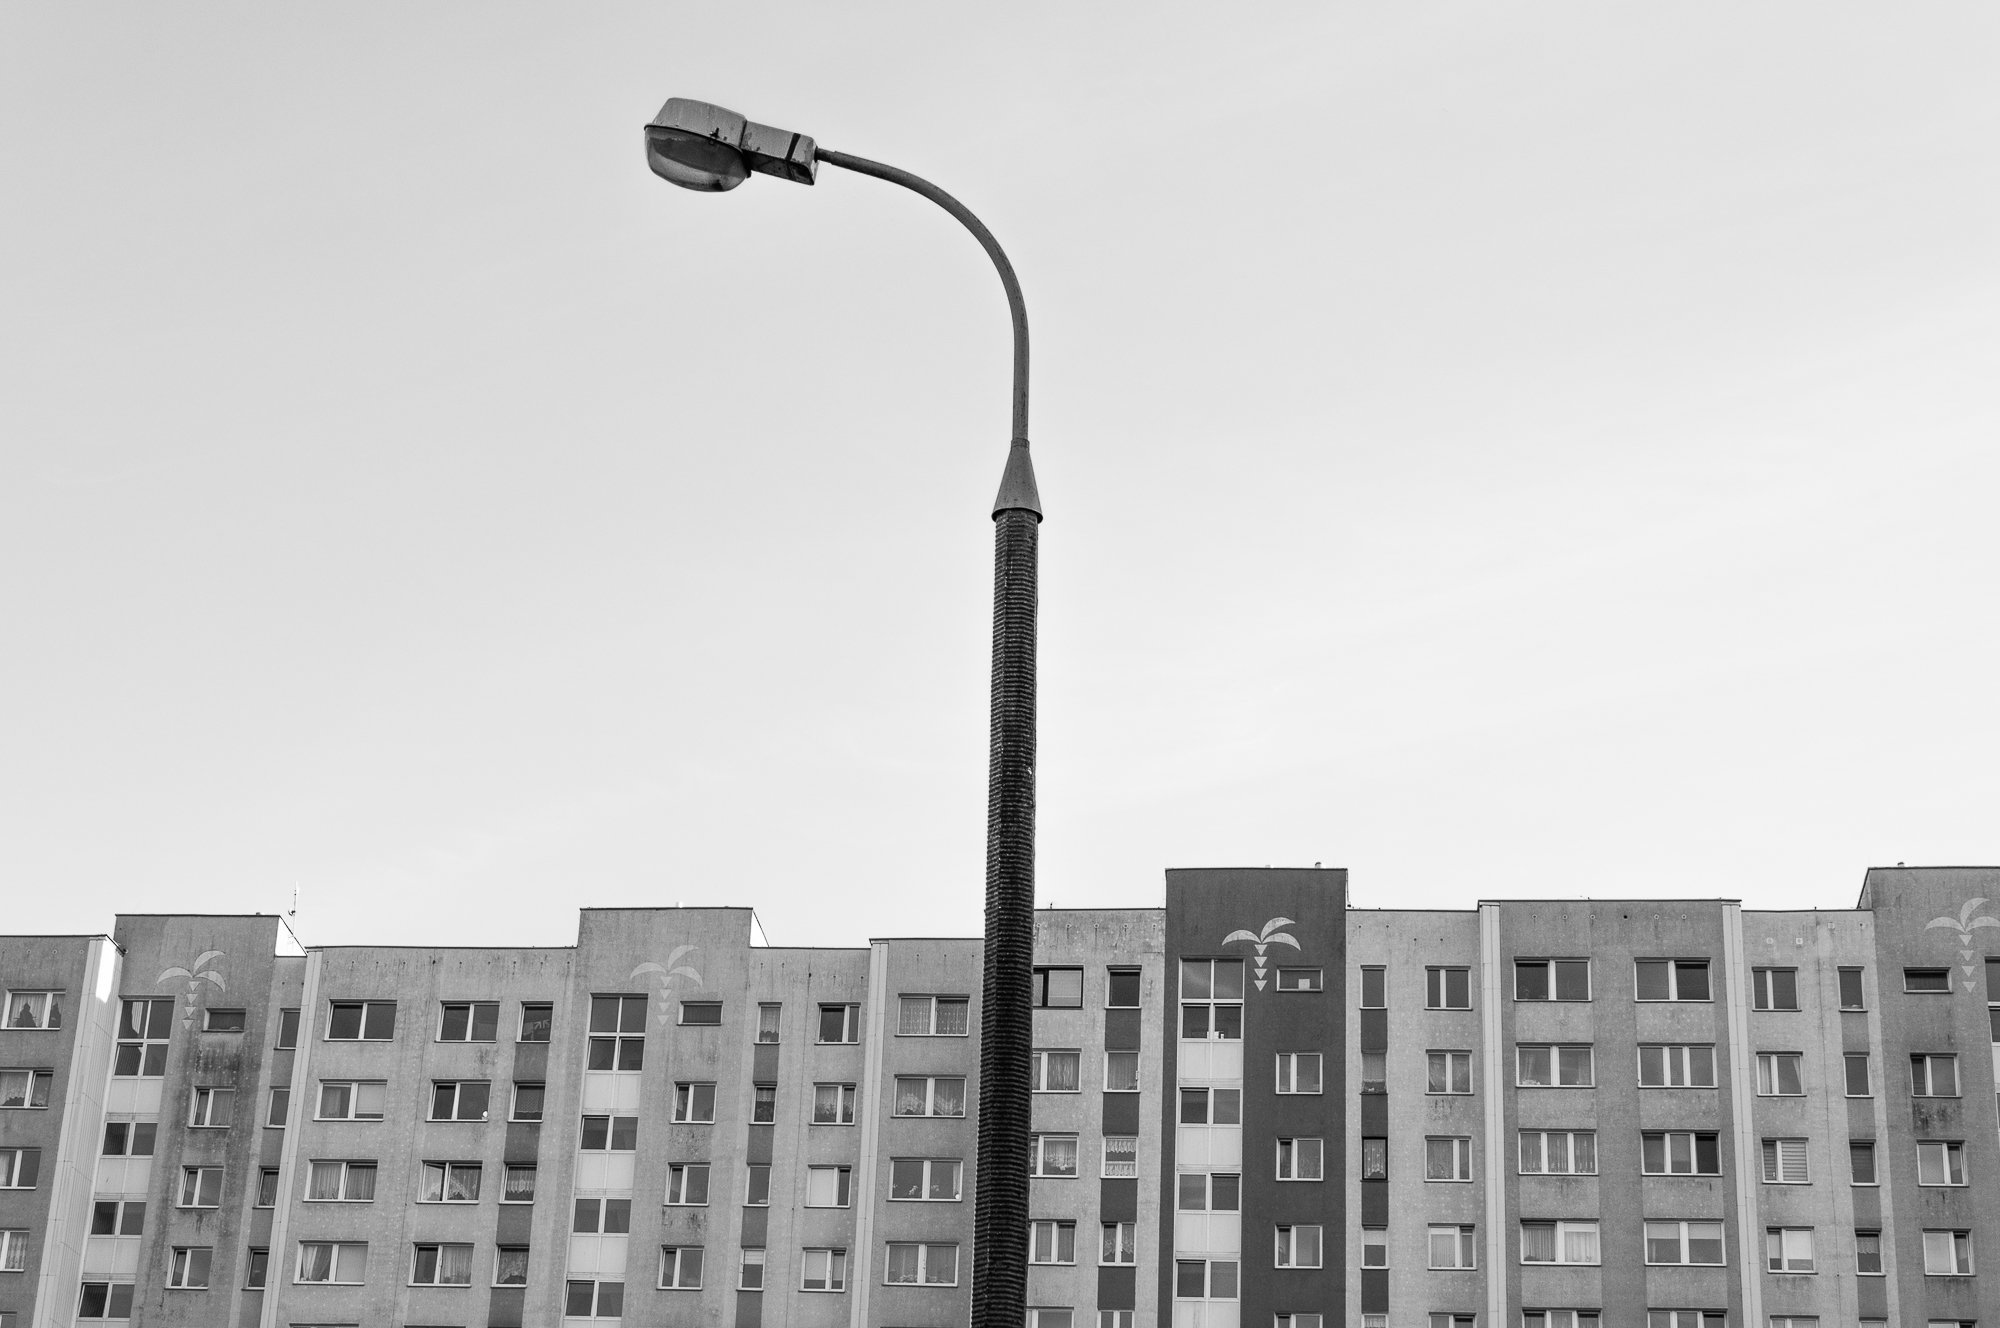 Adam Mazek Photography Warsaw 2020. Post: "Faithfulness." Minimalism. Street lamp and block of flats.